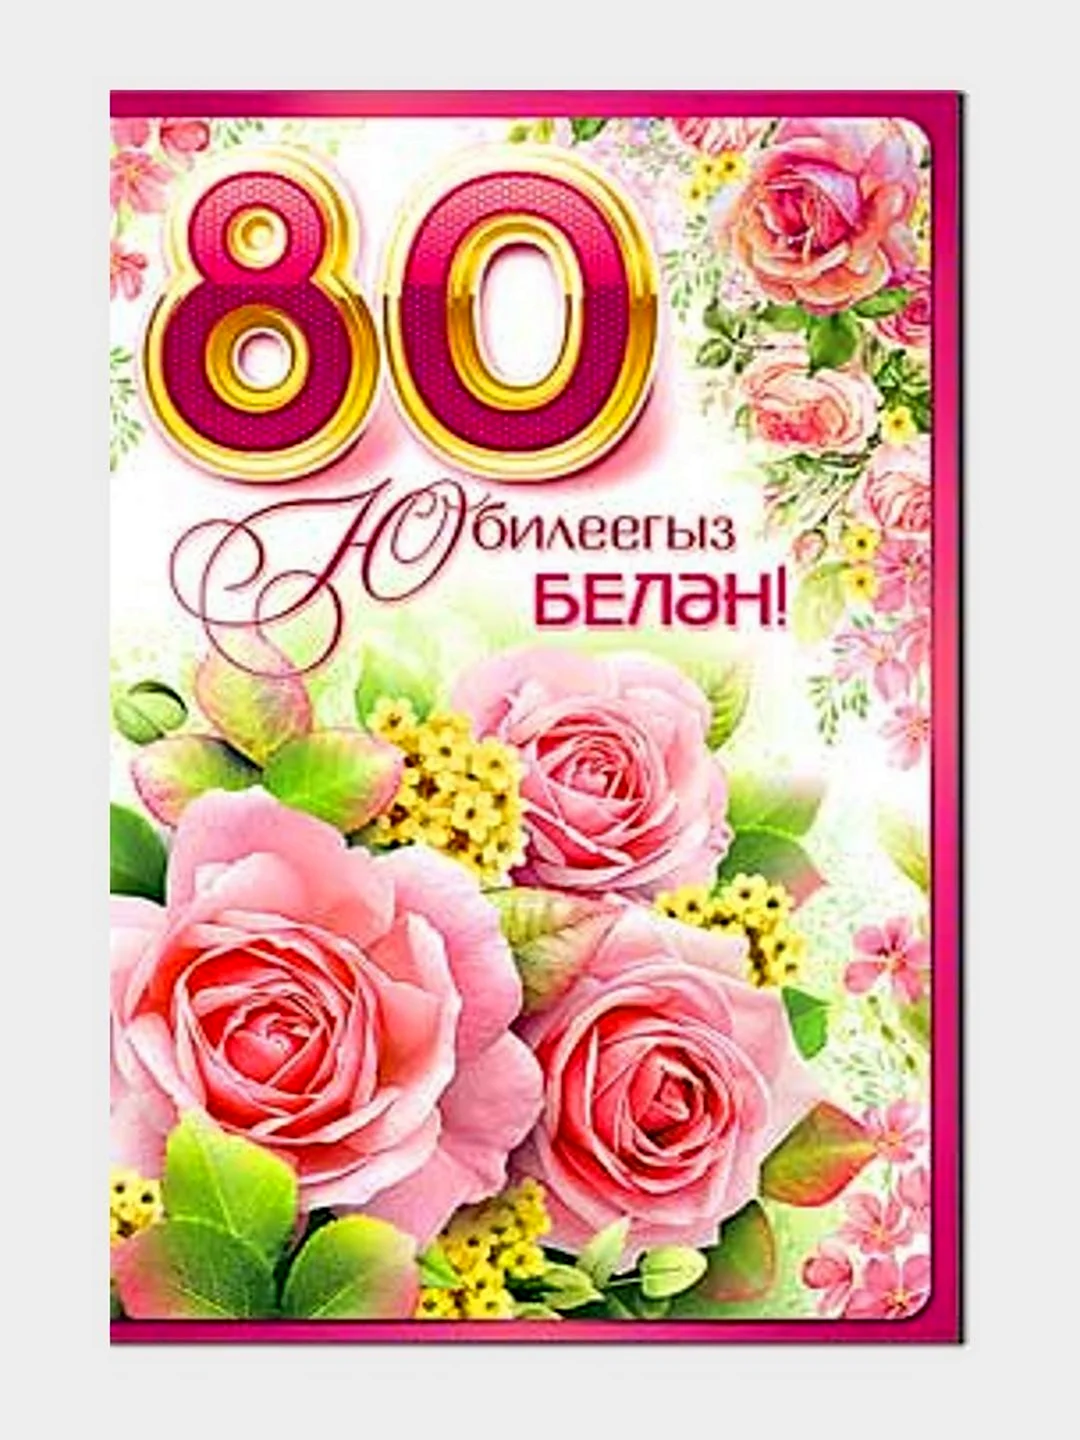 Юбилей 80 лет на татарском